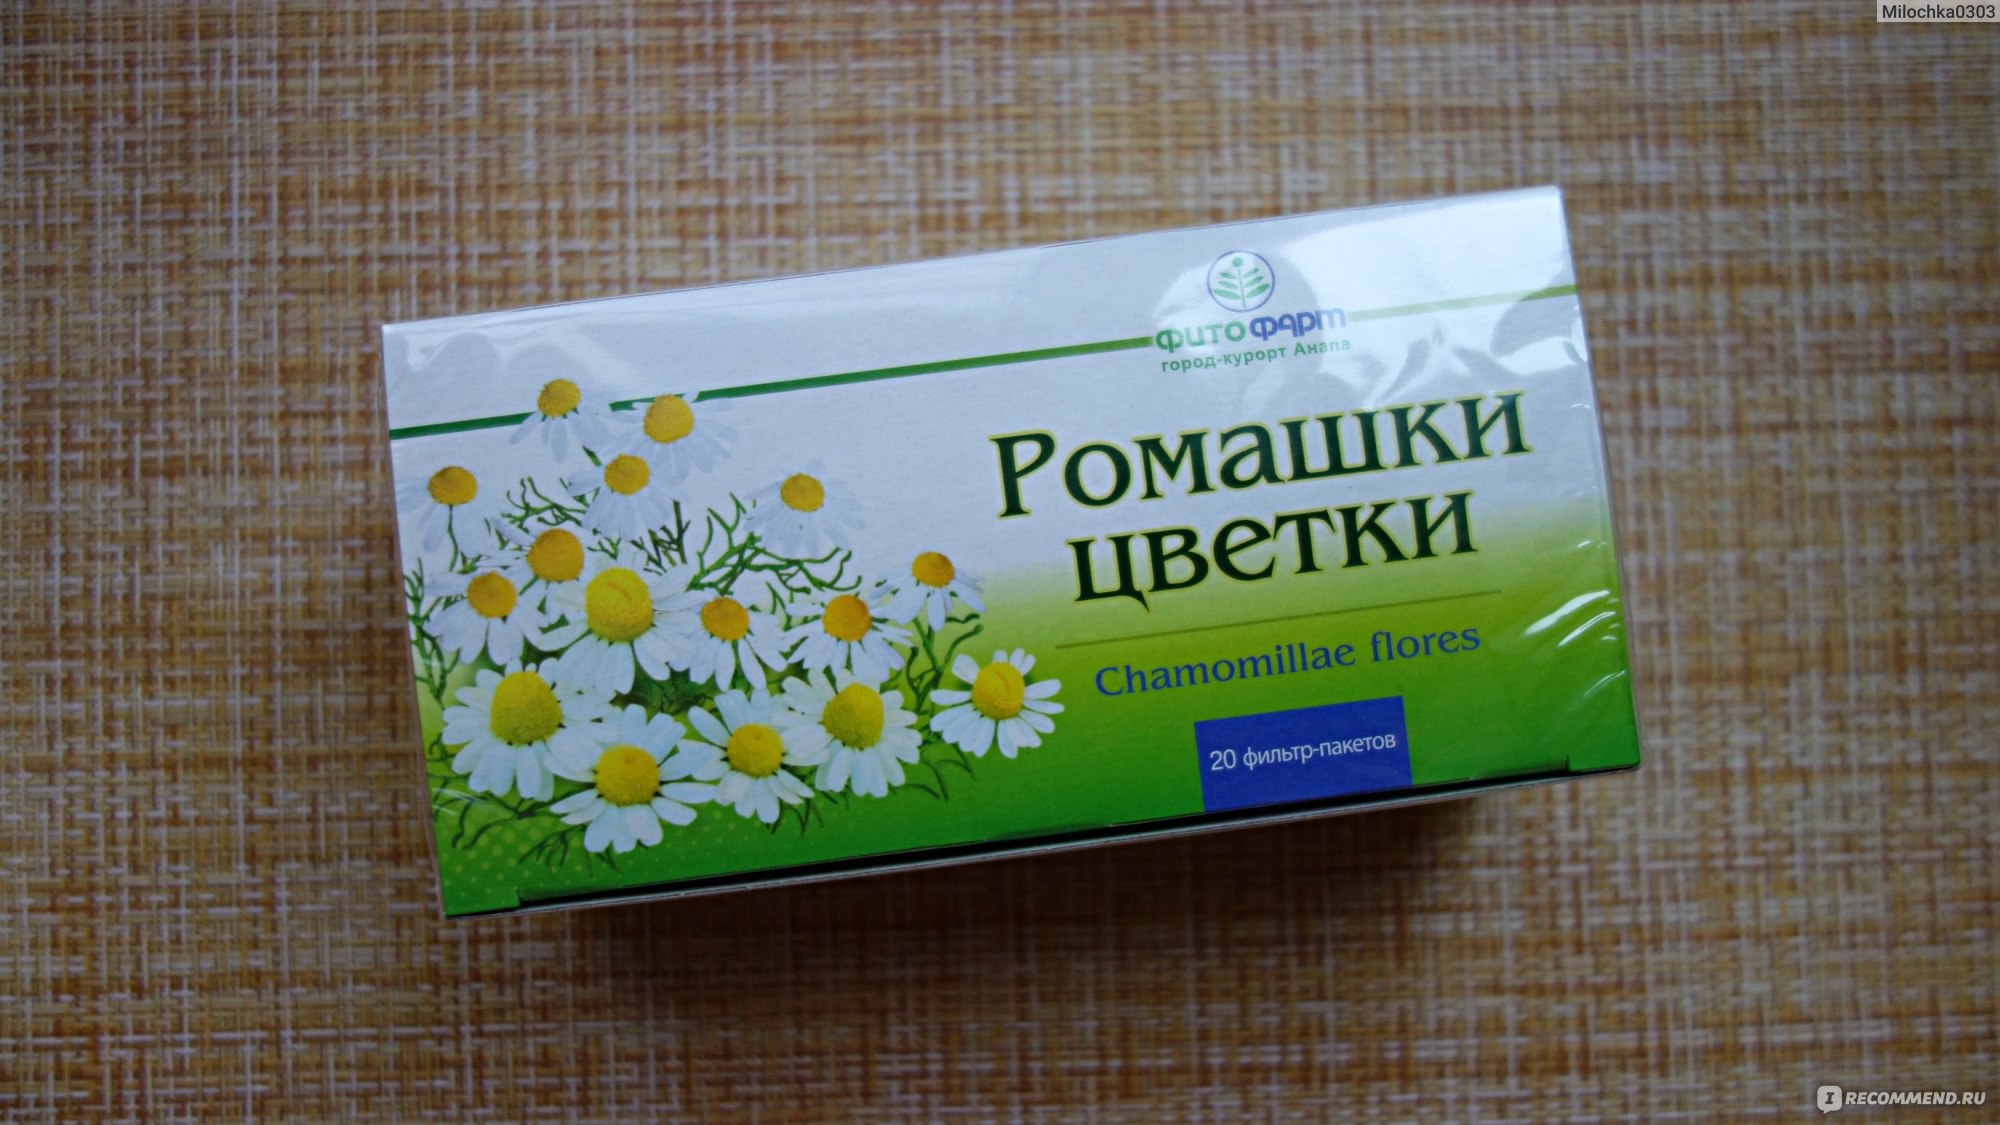 Лекарственные растения Фитофарм Ромашки цветки - «Ромашковый чай для .